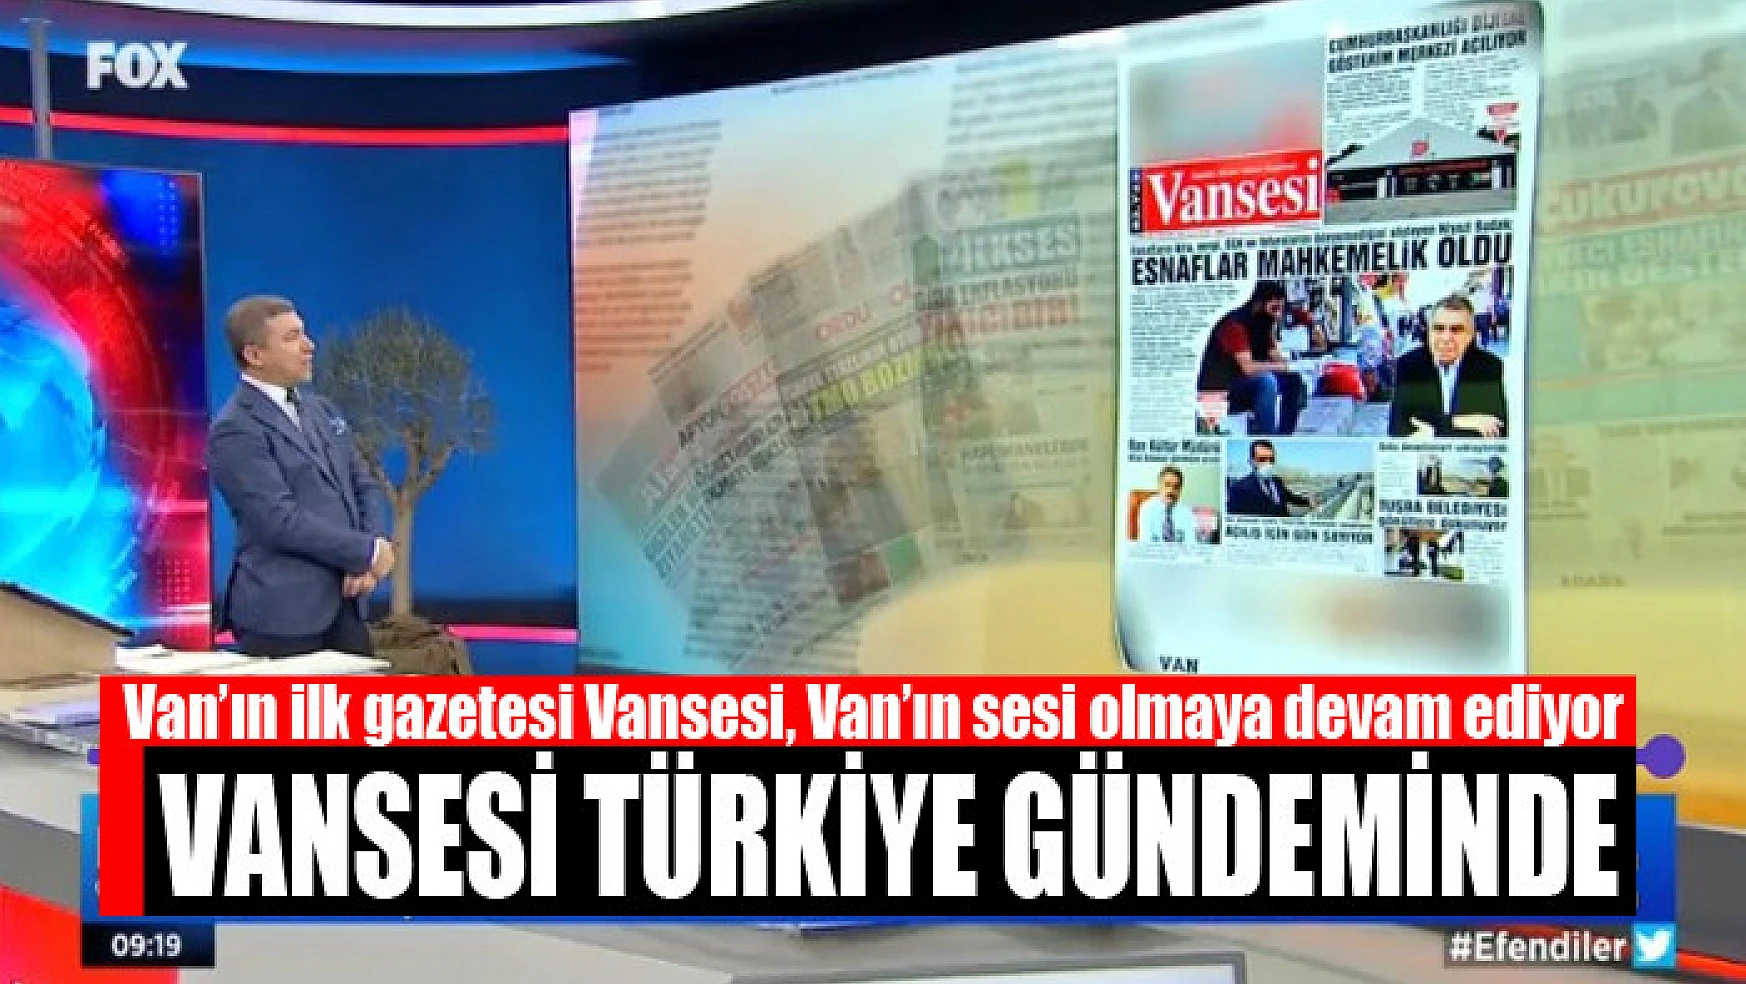 Vansesi Gazetesi Türkiye gündeminde